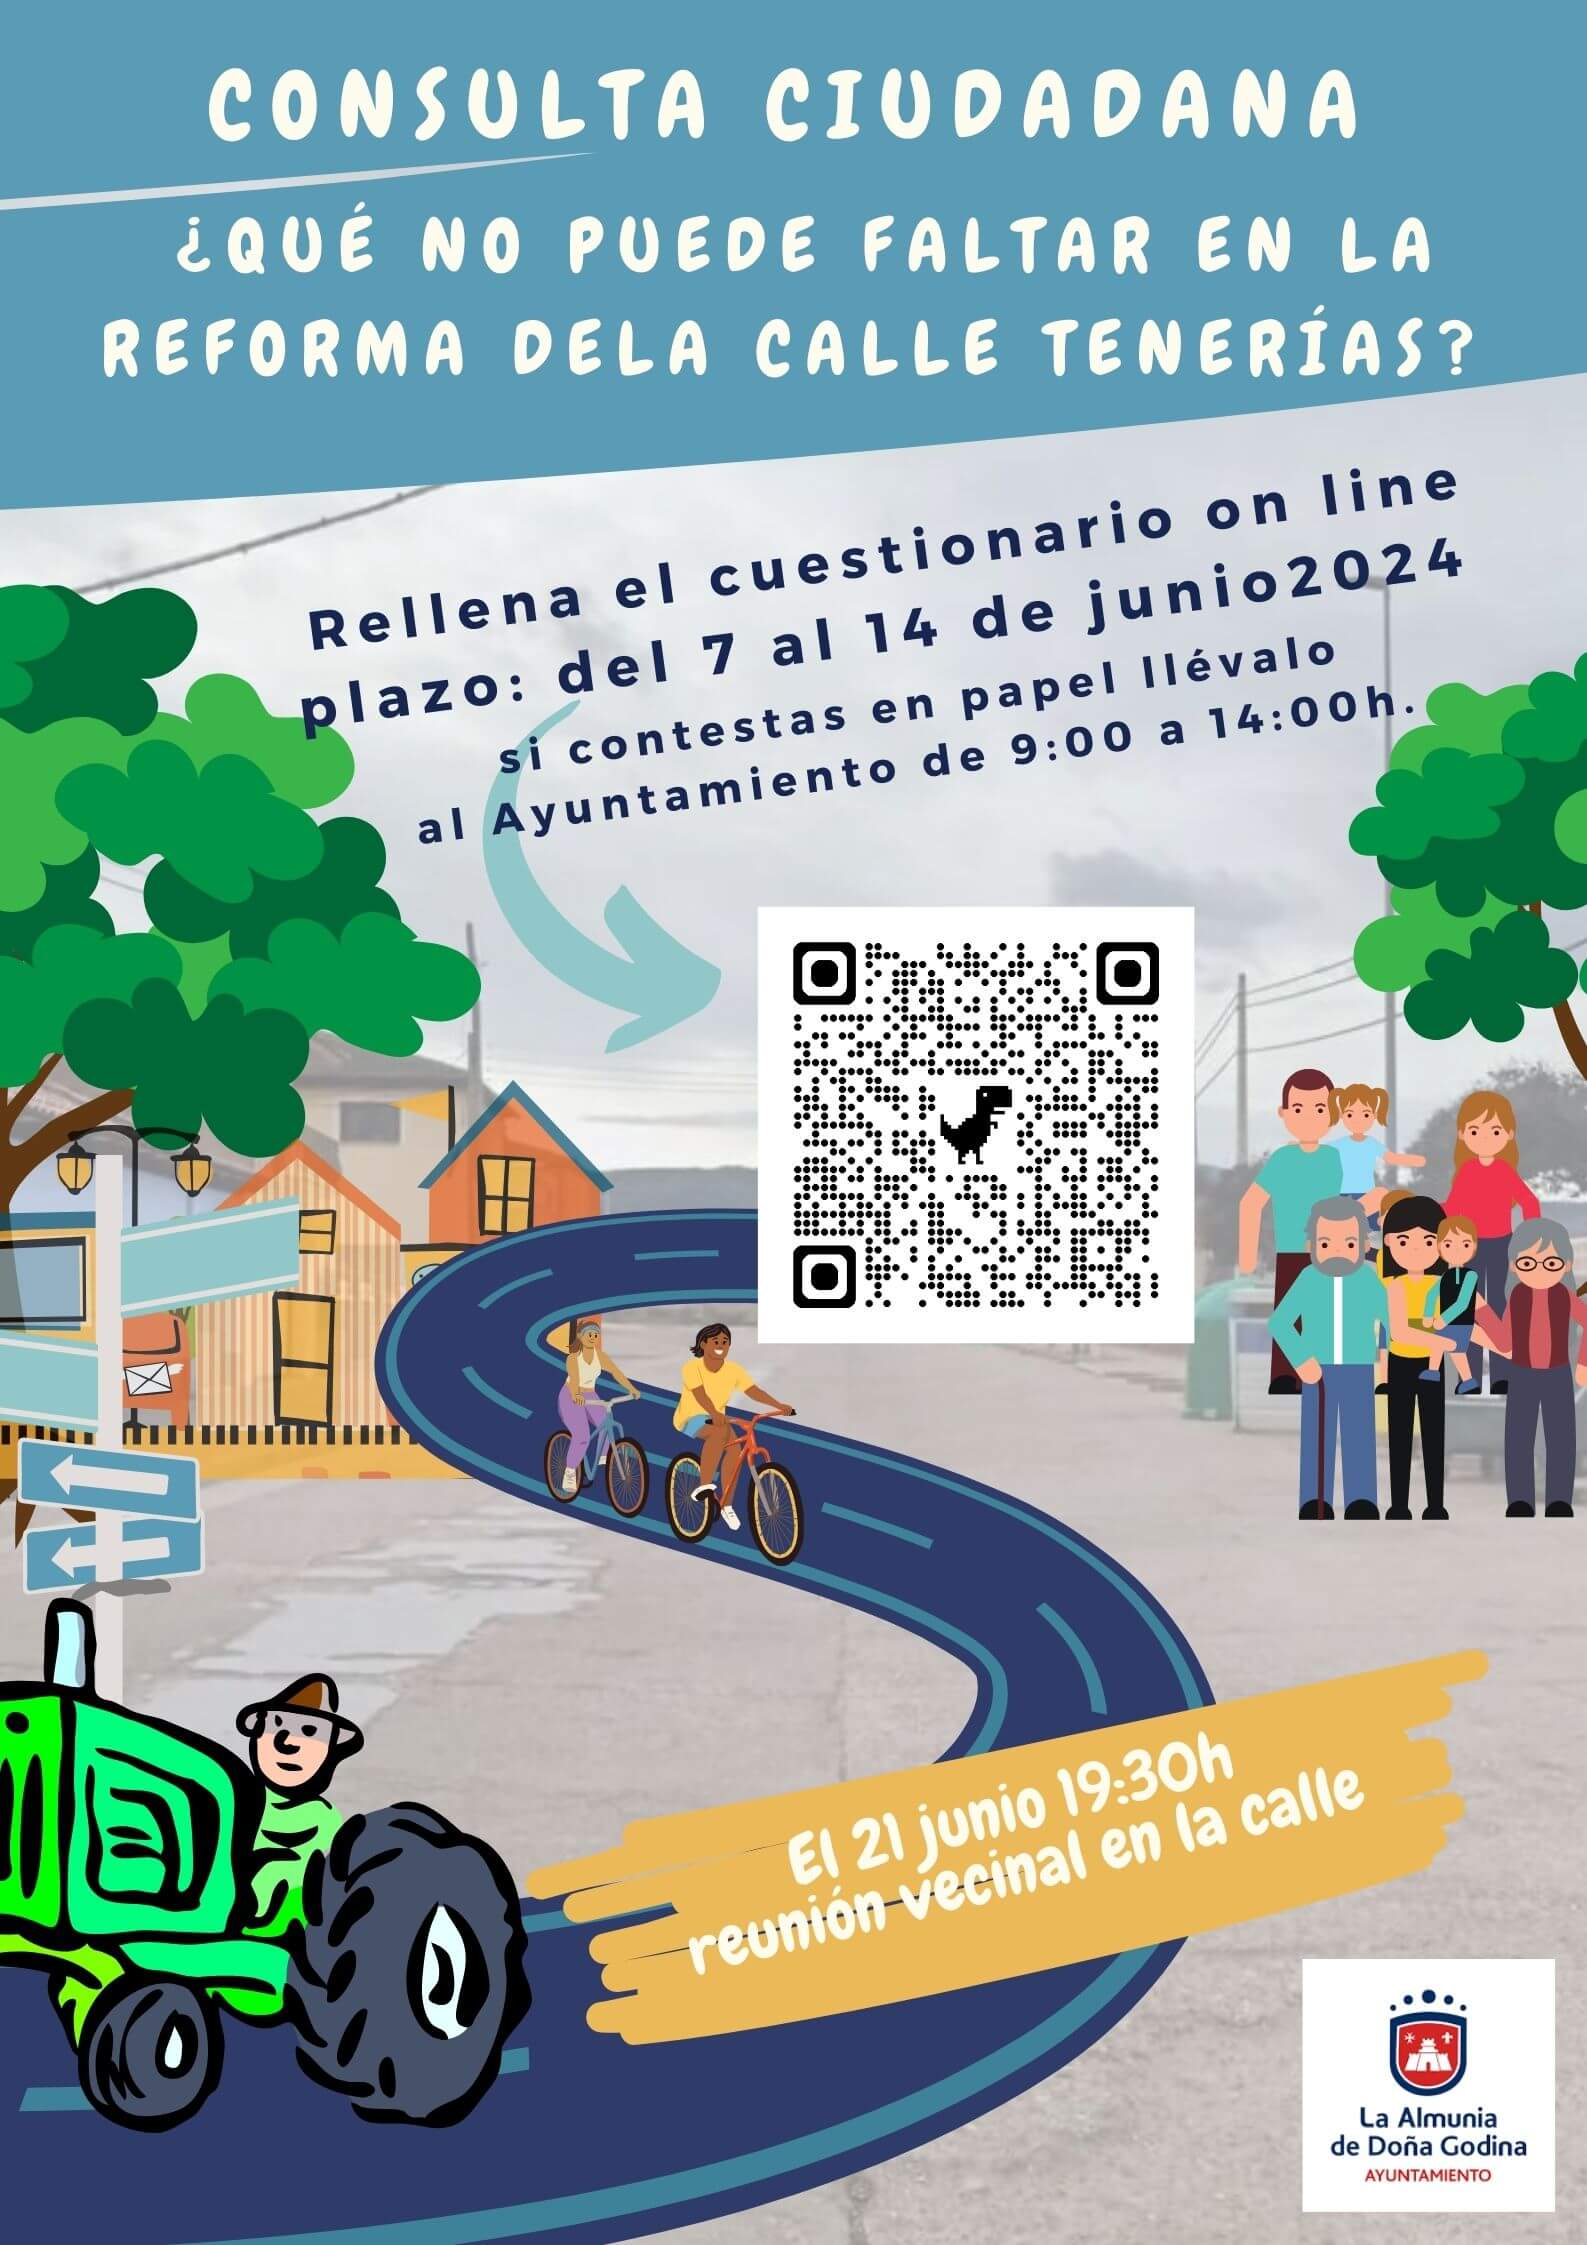 ¿Qué no puede faltar en la reforma de la Calle Tenerías de La Almunia? - Consulta Ciudadana